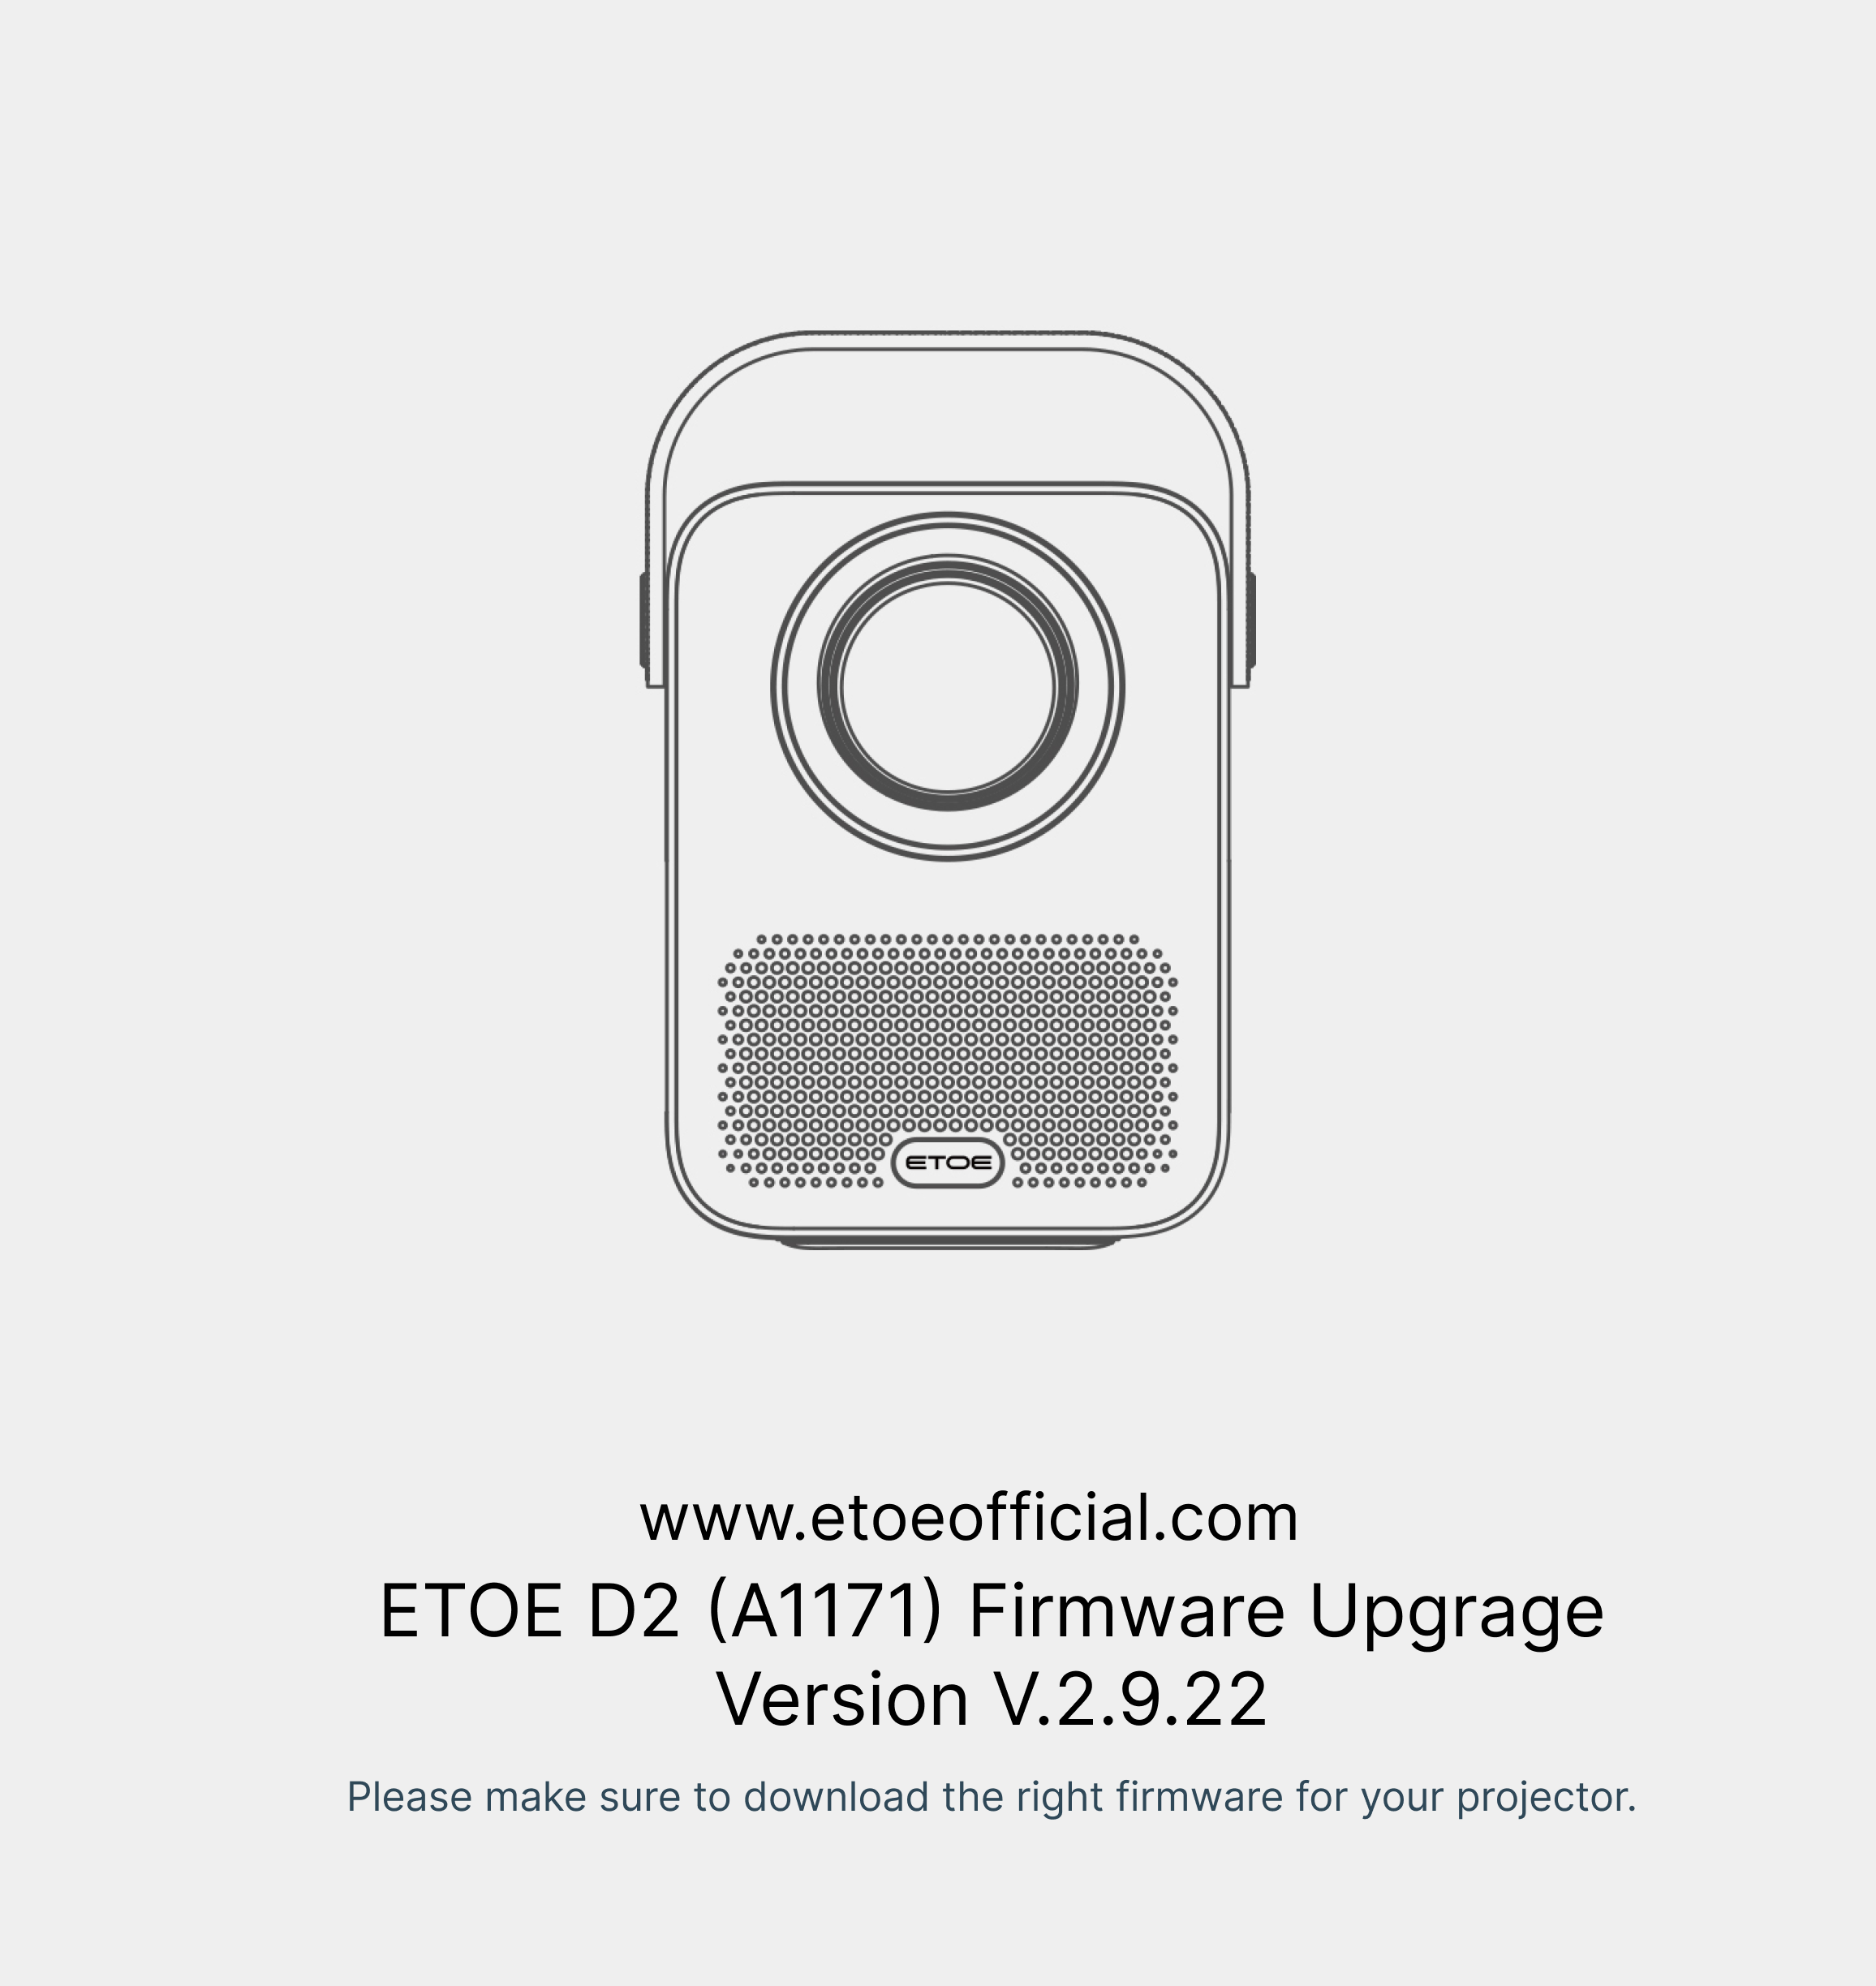 ETOE D2 (A1171) Firmware V.2.9.22 version bin